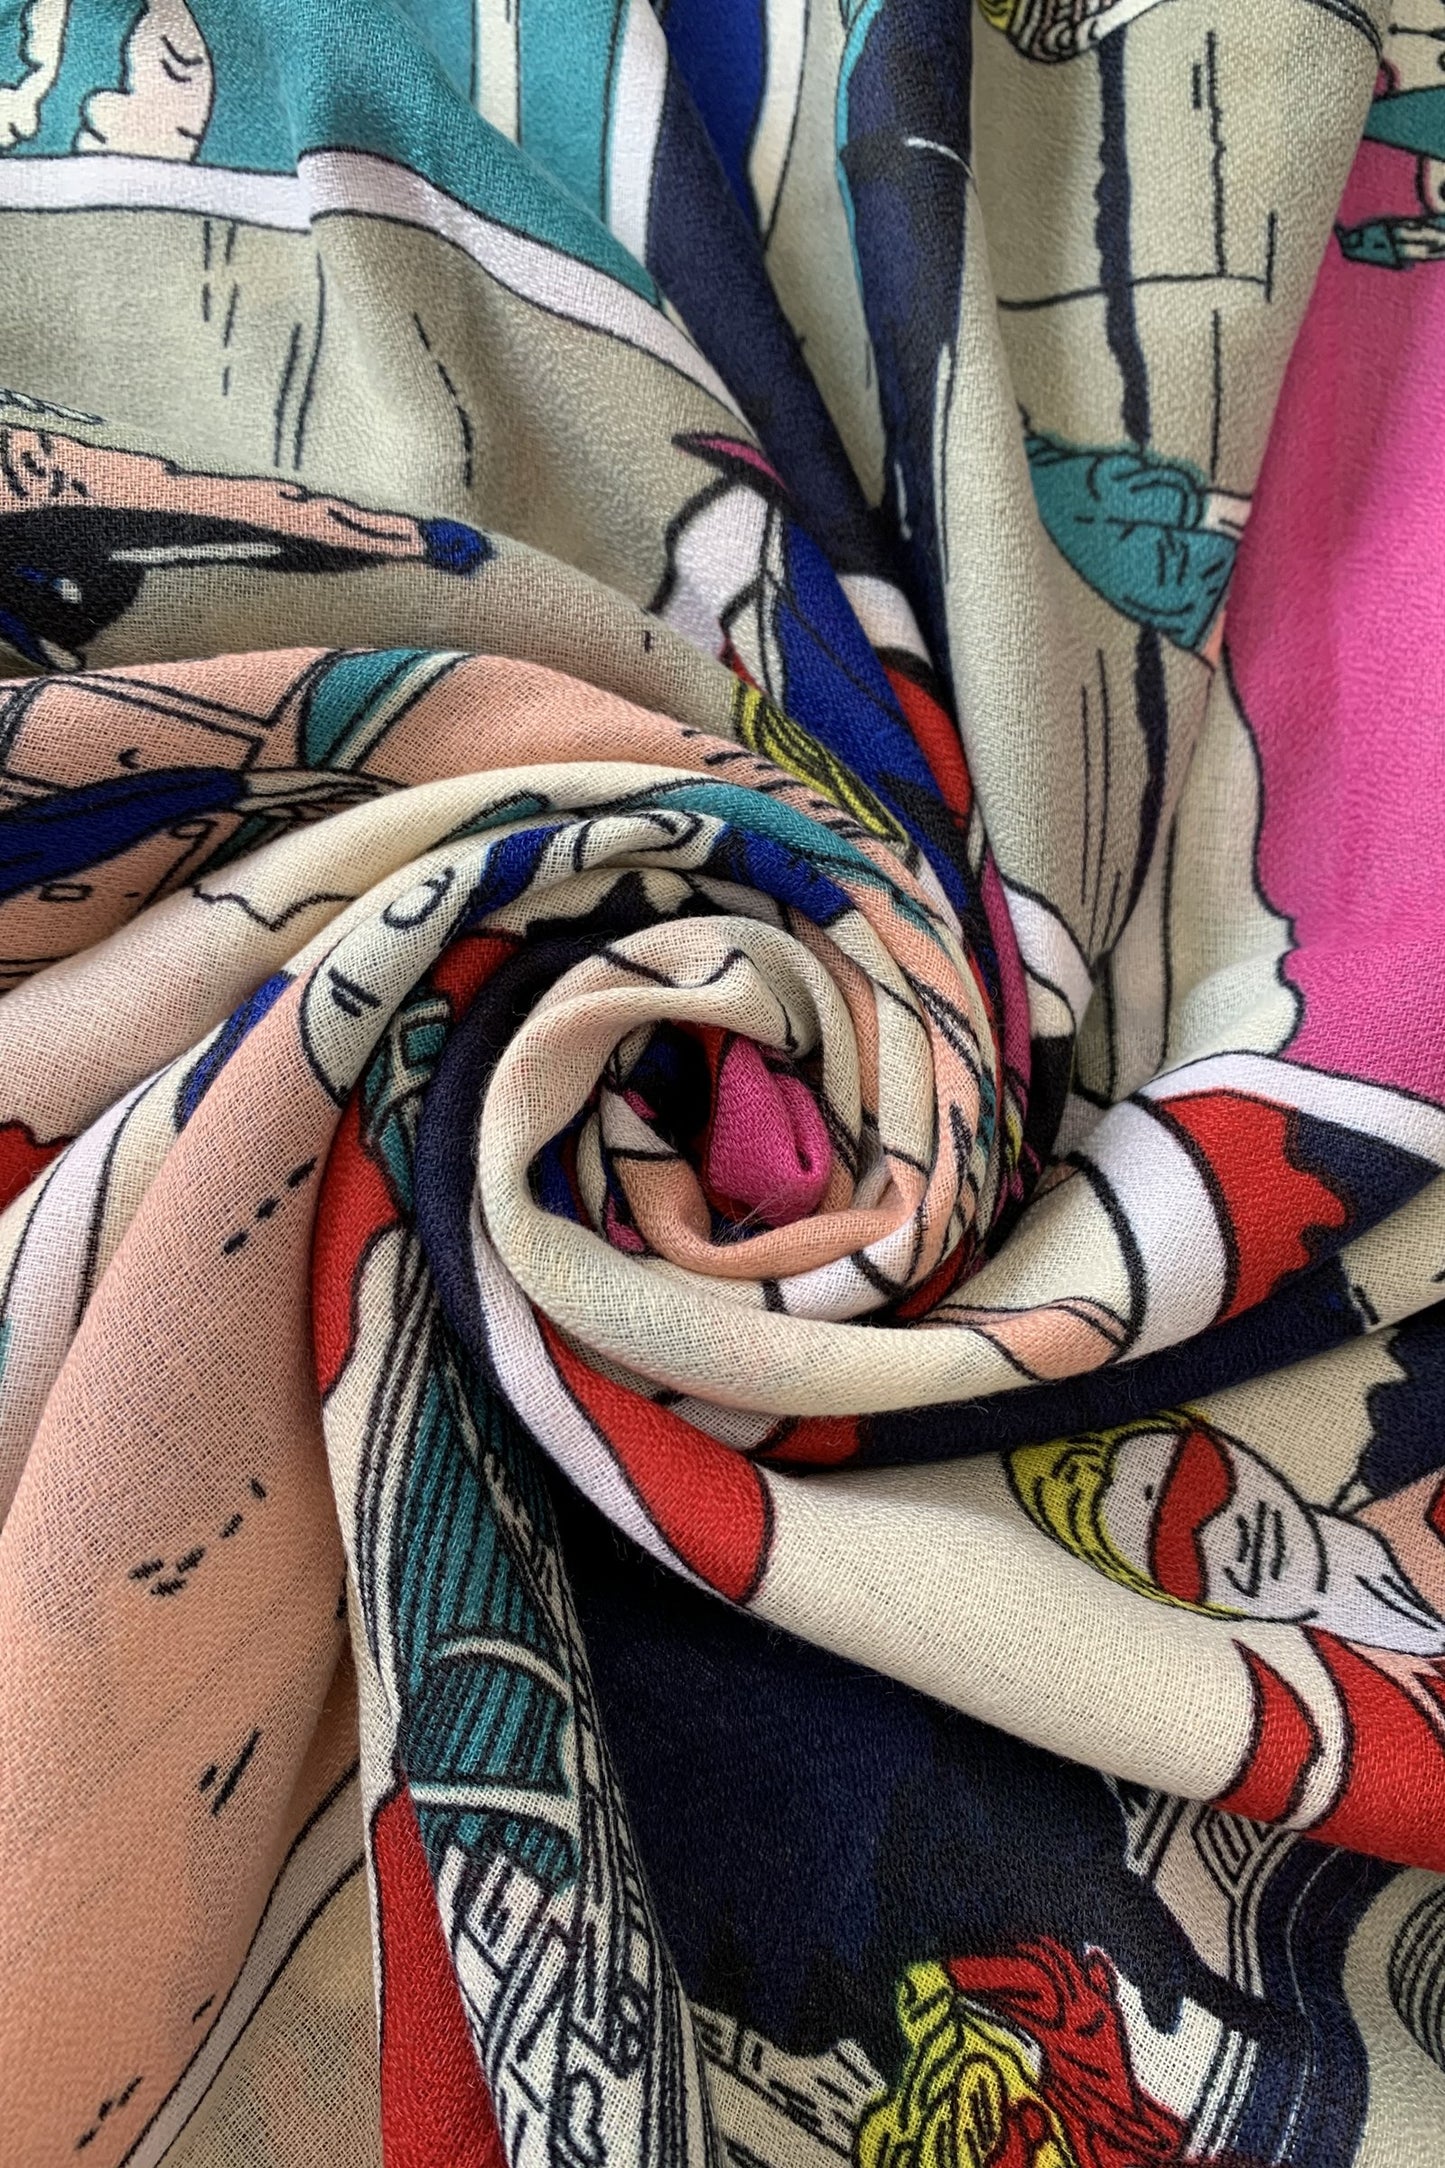 Bufanda-Chal de algodón, 85 cm x 180 cm, Roy Lichtenstein - Estilo Pop Art de los 60